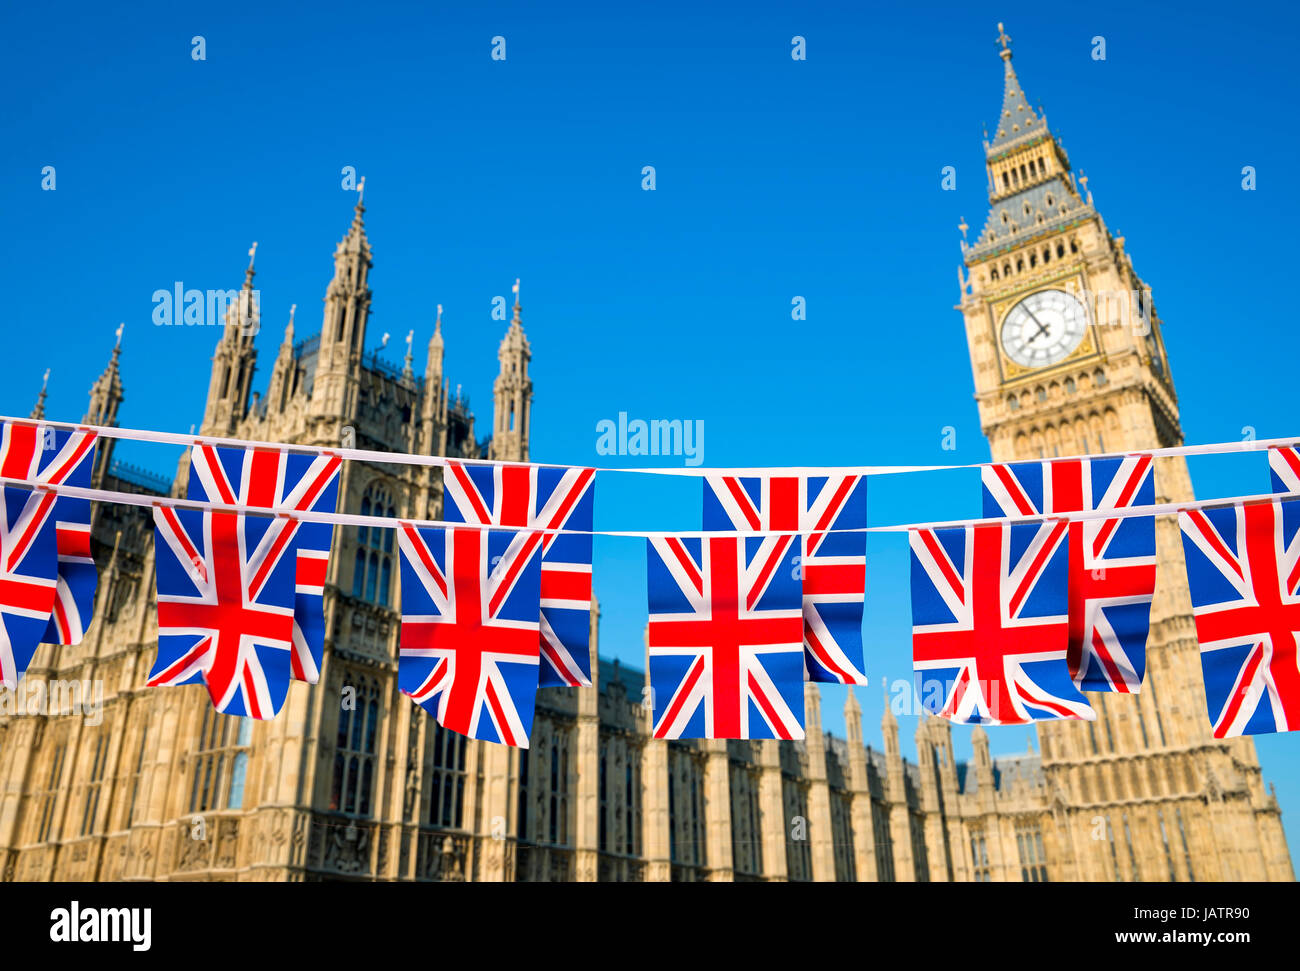 Zwei Reihen der Union Jack Bunting fliegen vor den Houses of Parliament, Westminster Palace mit Big Ben unter strahlend blauem Himmel in London, England Stockfoto